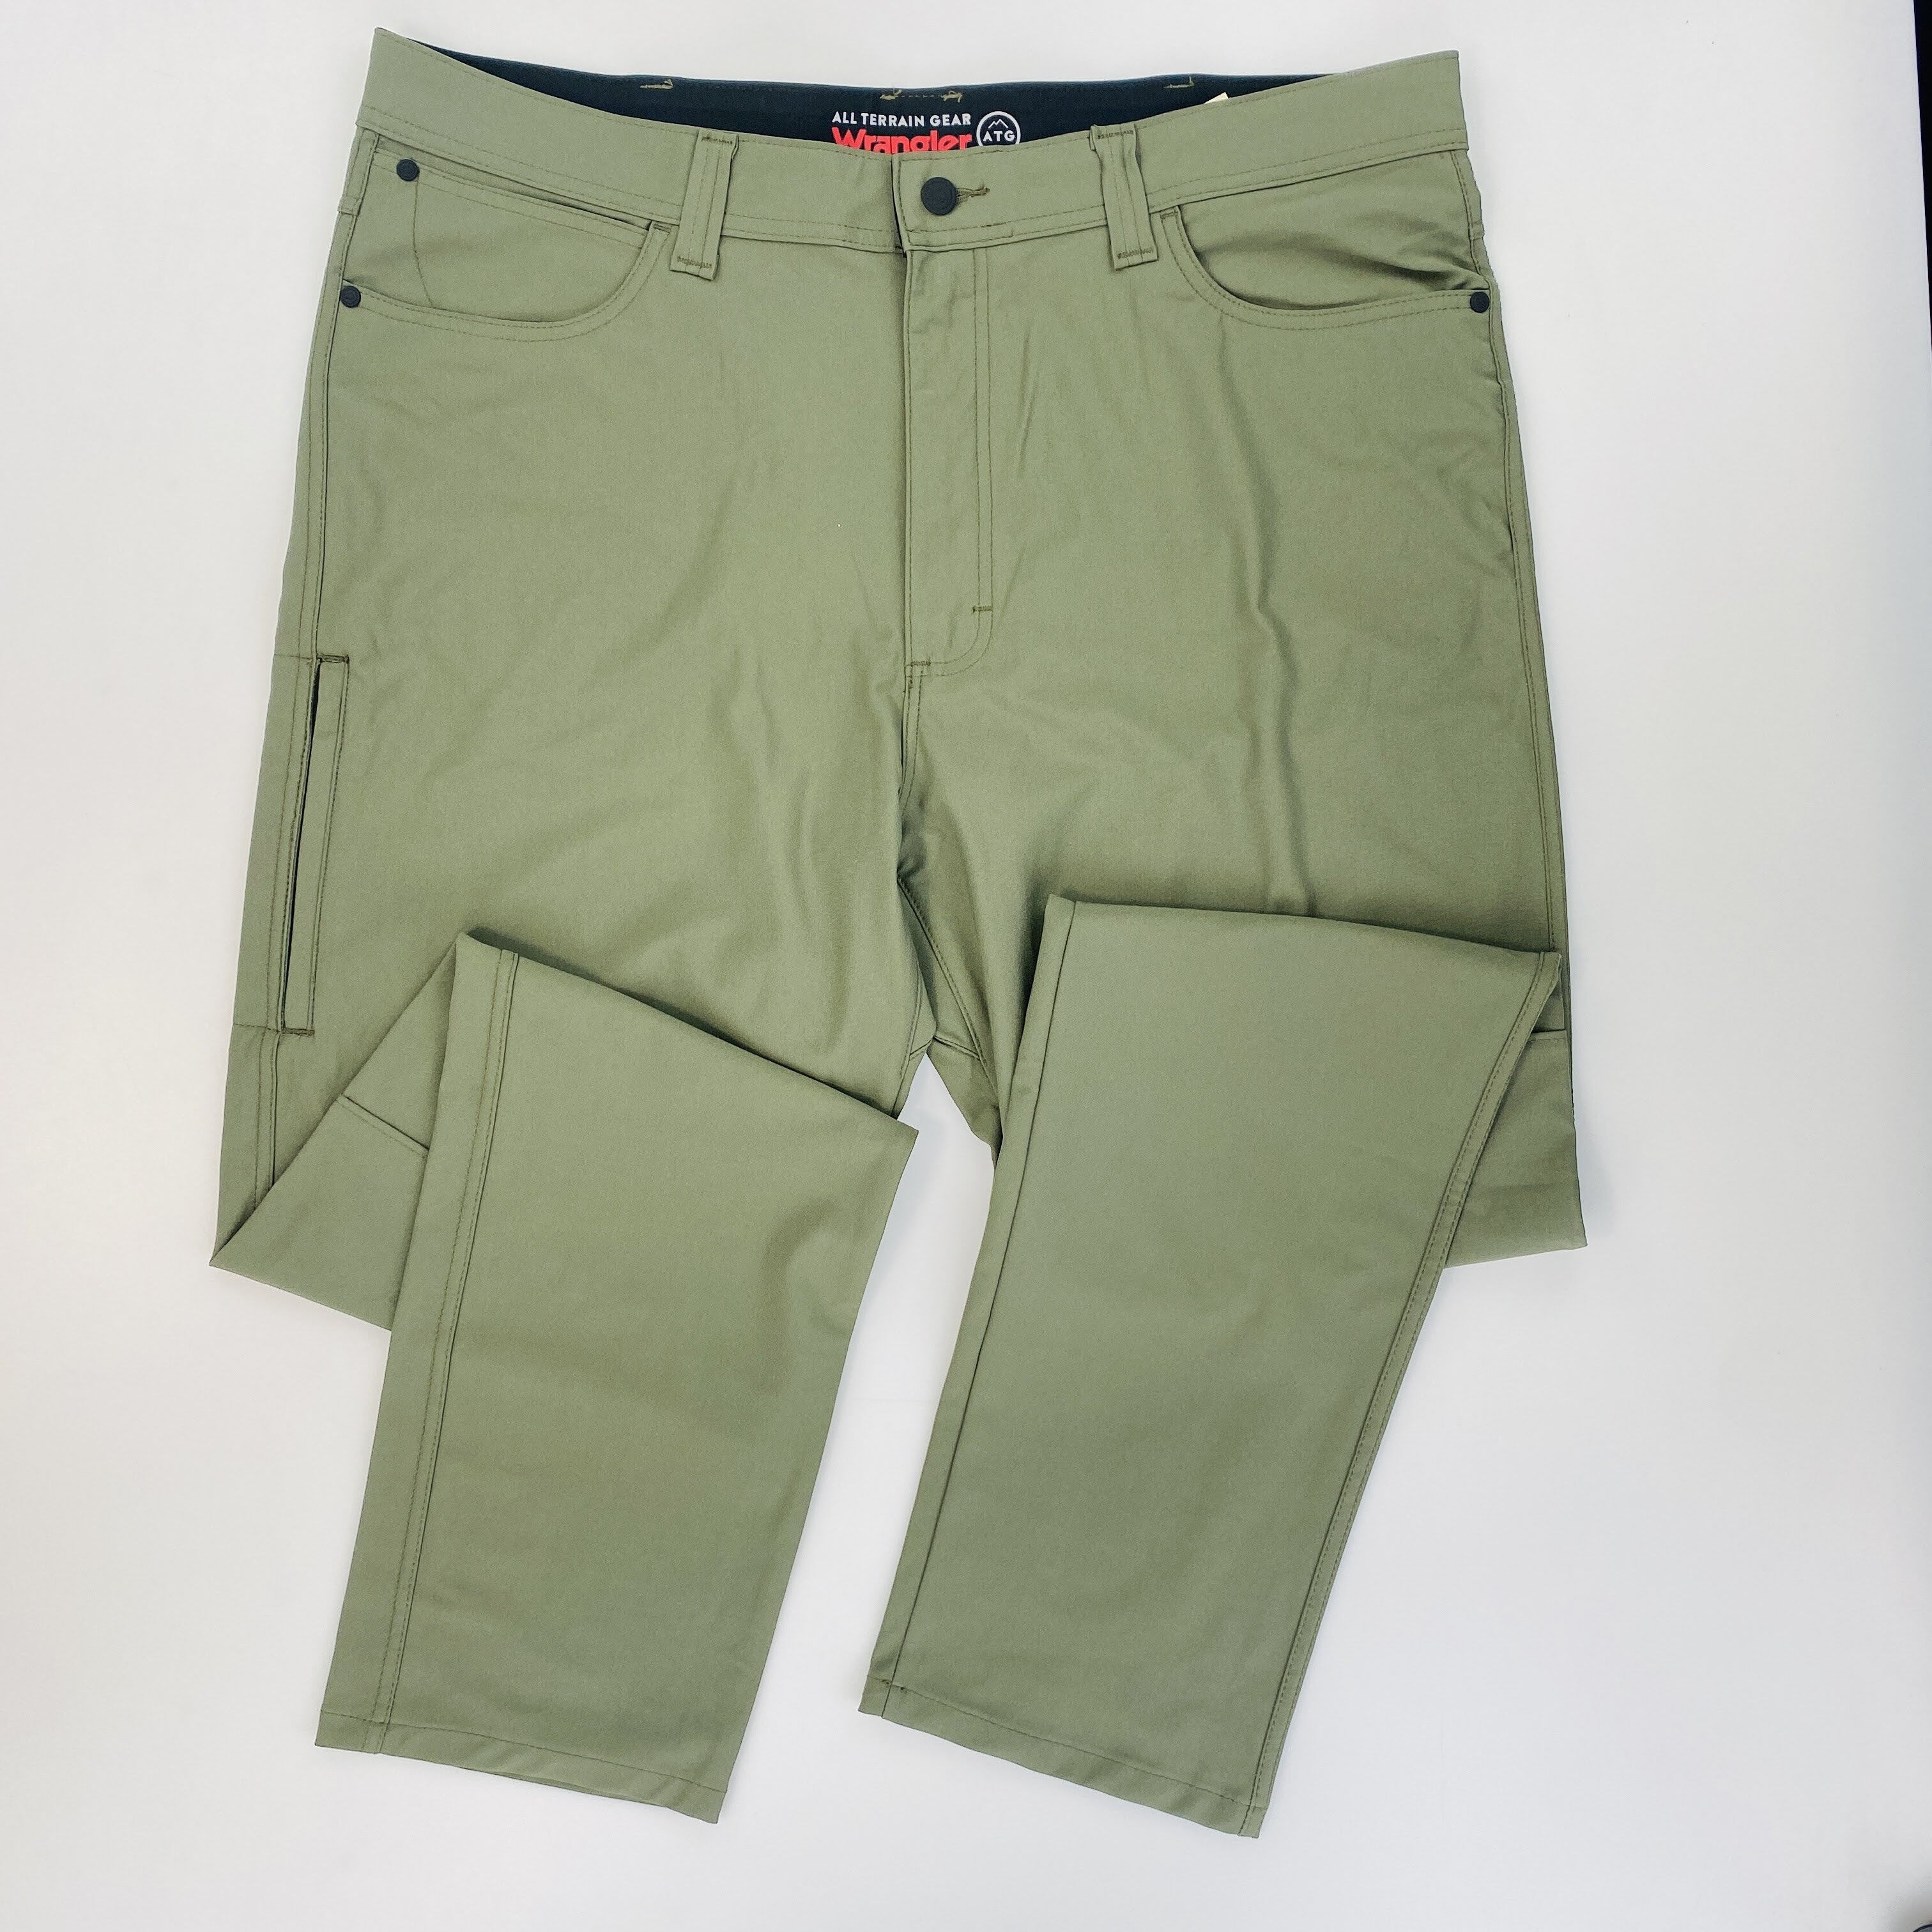 Wrangler Fwds 5 Pocket Pant - Second Hand Pánské turistické kalhoty - Kaki - 52 | Hardloop